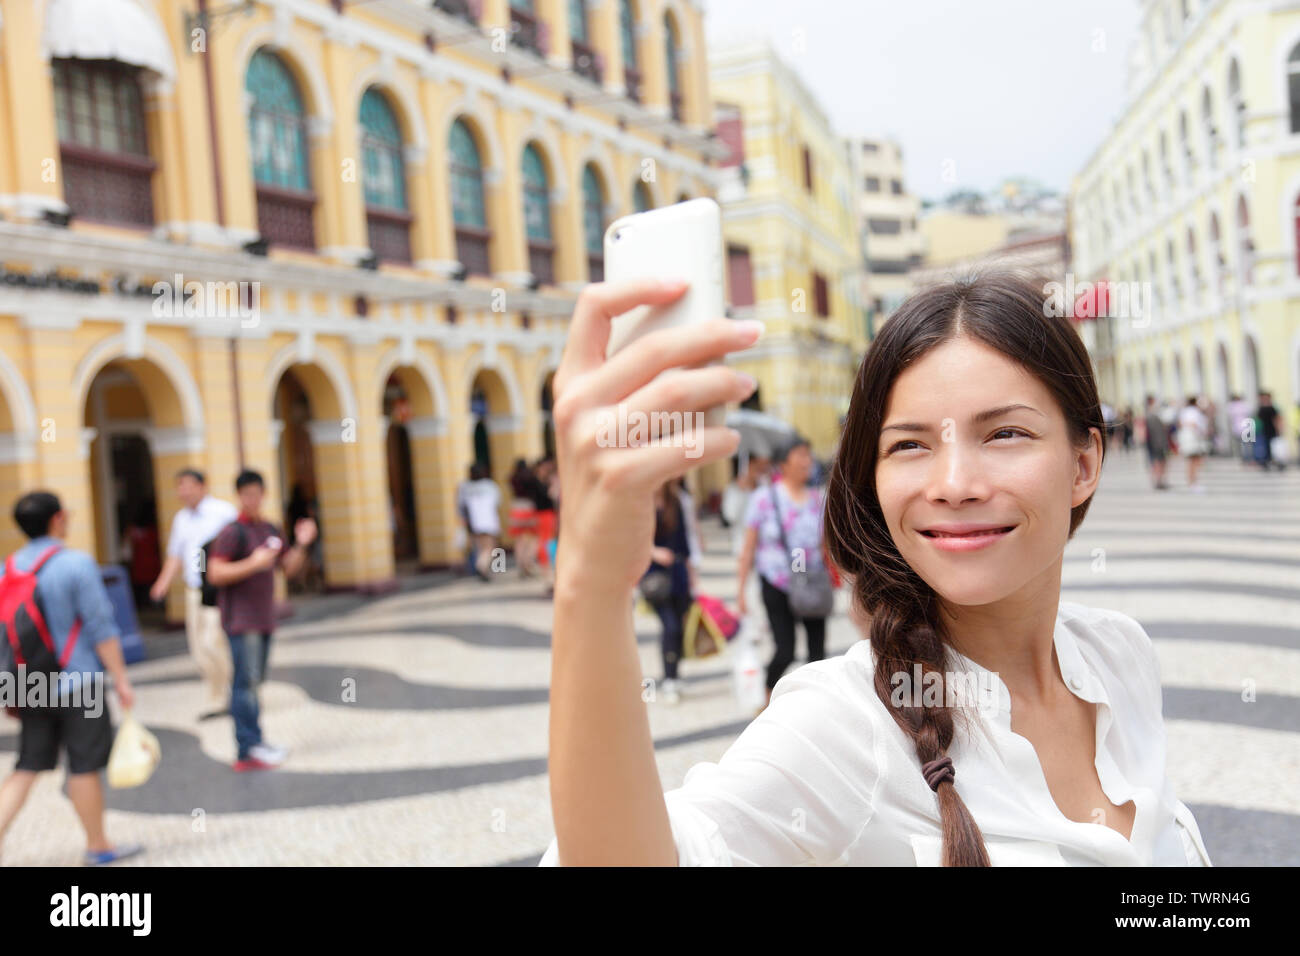 Mujer tomando fotografías selfie turístico en Macao, China, en la Plaza del Senado o la Plaza del Senado. Chica asiática turística teléfono inteligente con cámara para tomar fotografías mientras viajaba en Macao. Concepto de viajes y turismo. Foto de stock